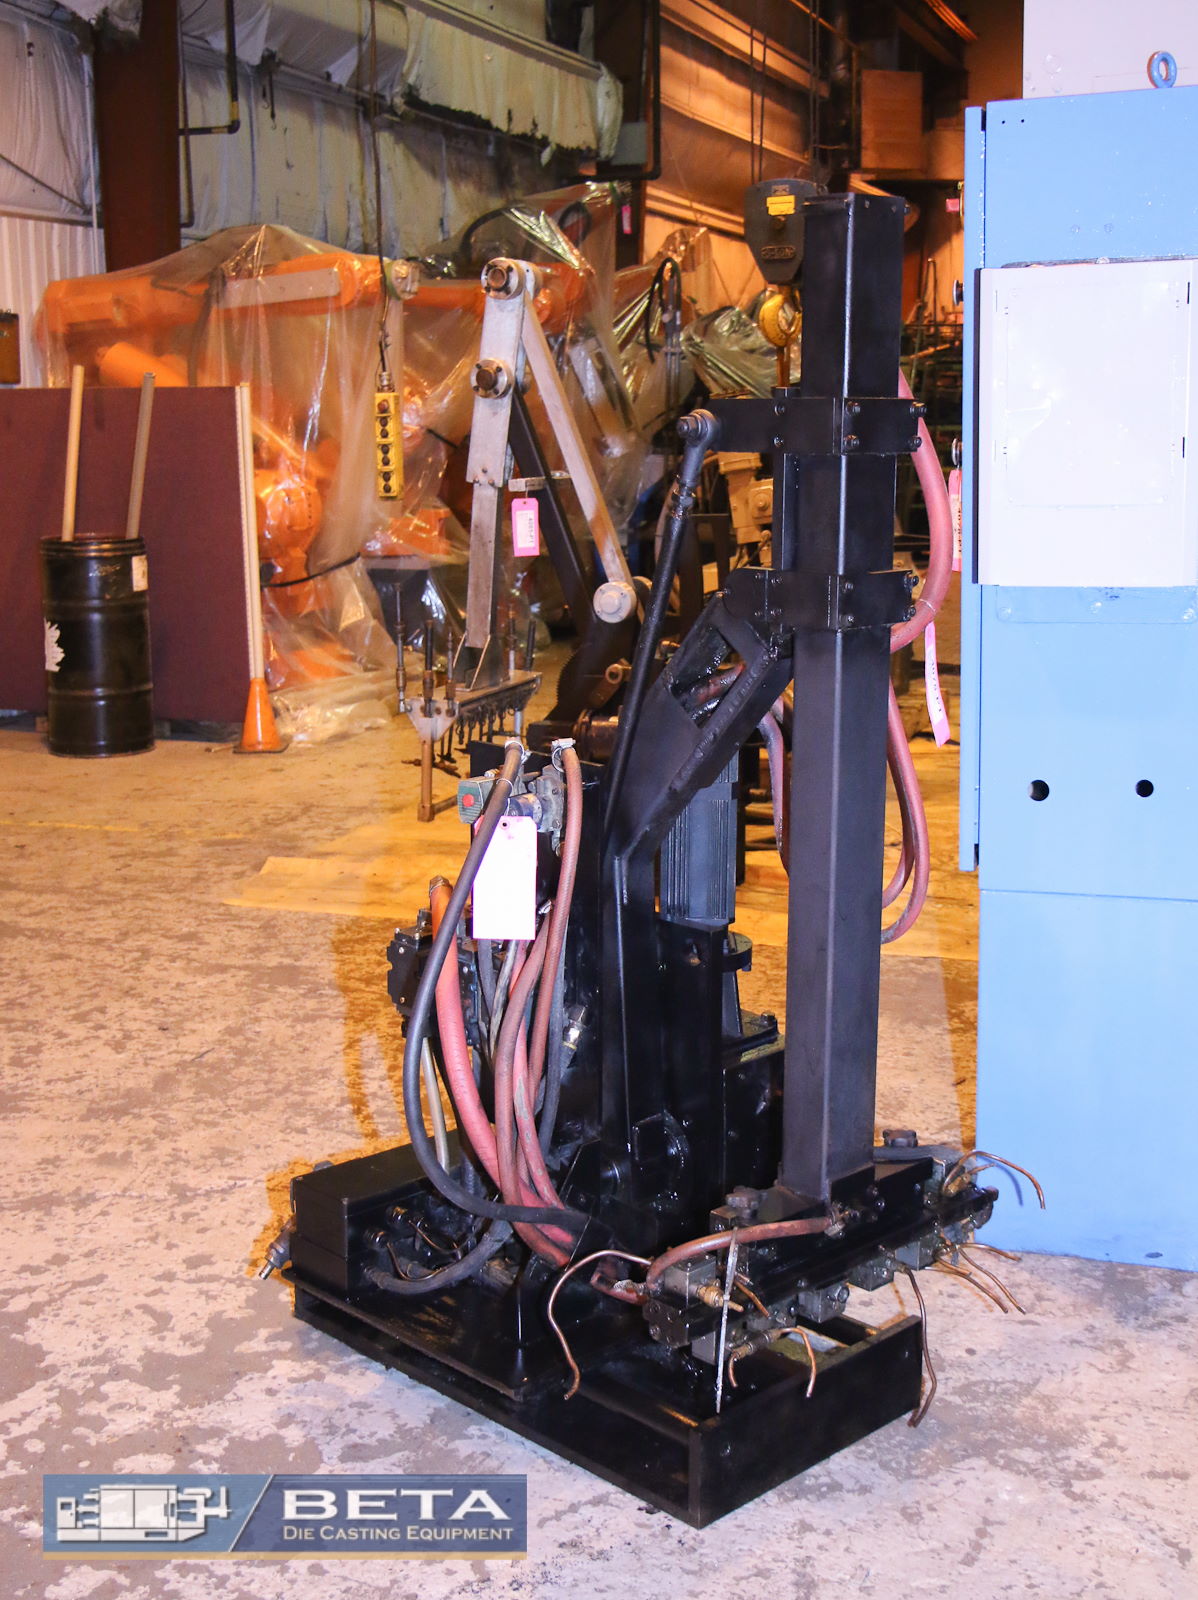 Imagen detallada del pulverizador de avance usado para fundición a presión